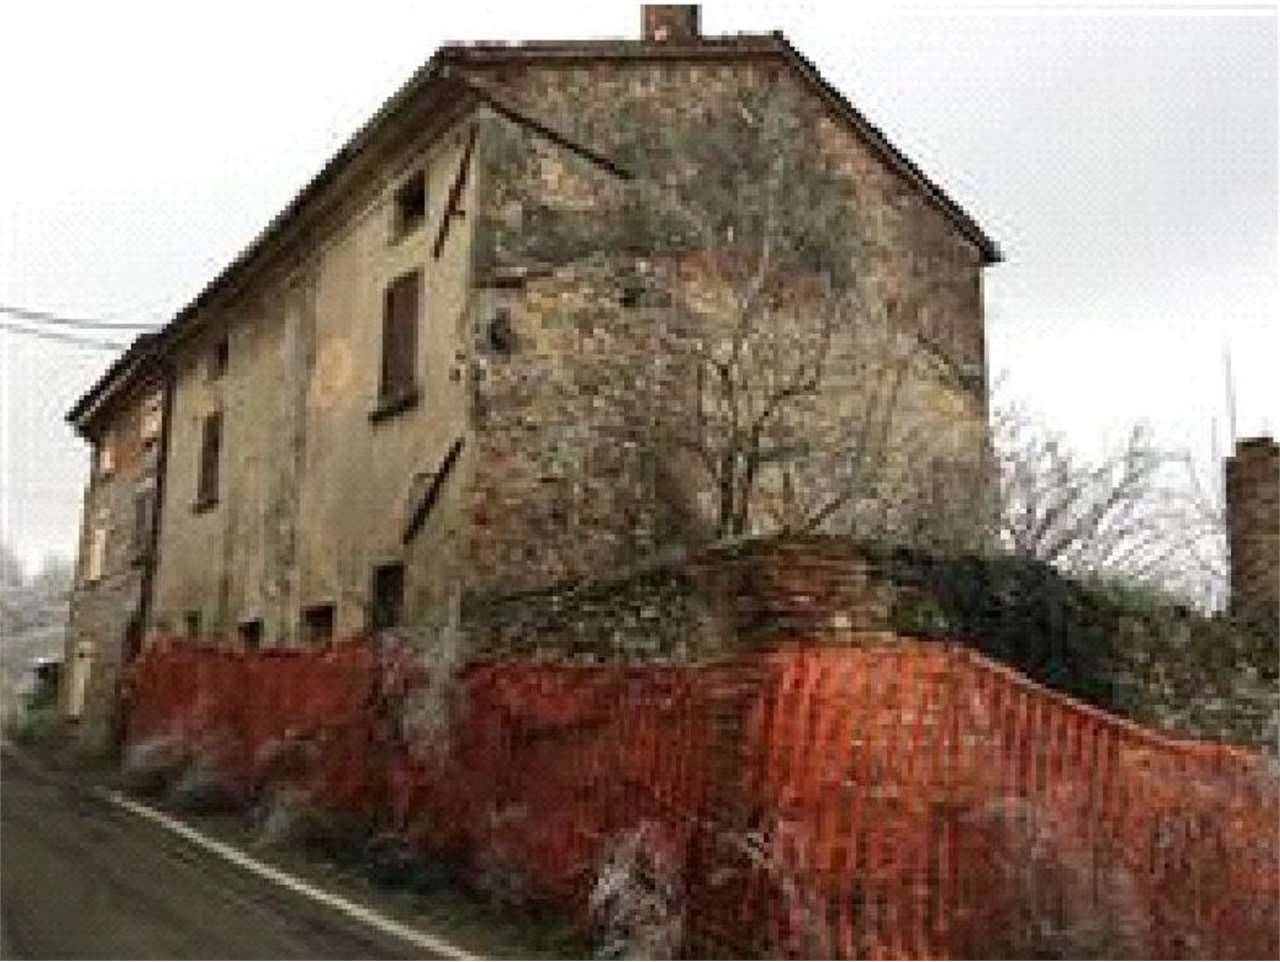 Rustico in Vendita a Borgonovo Val Tidone